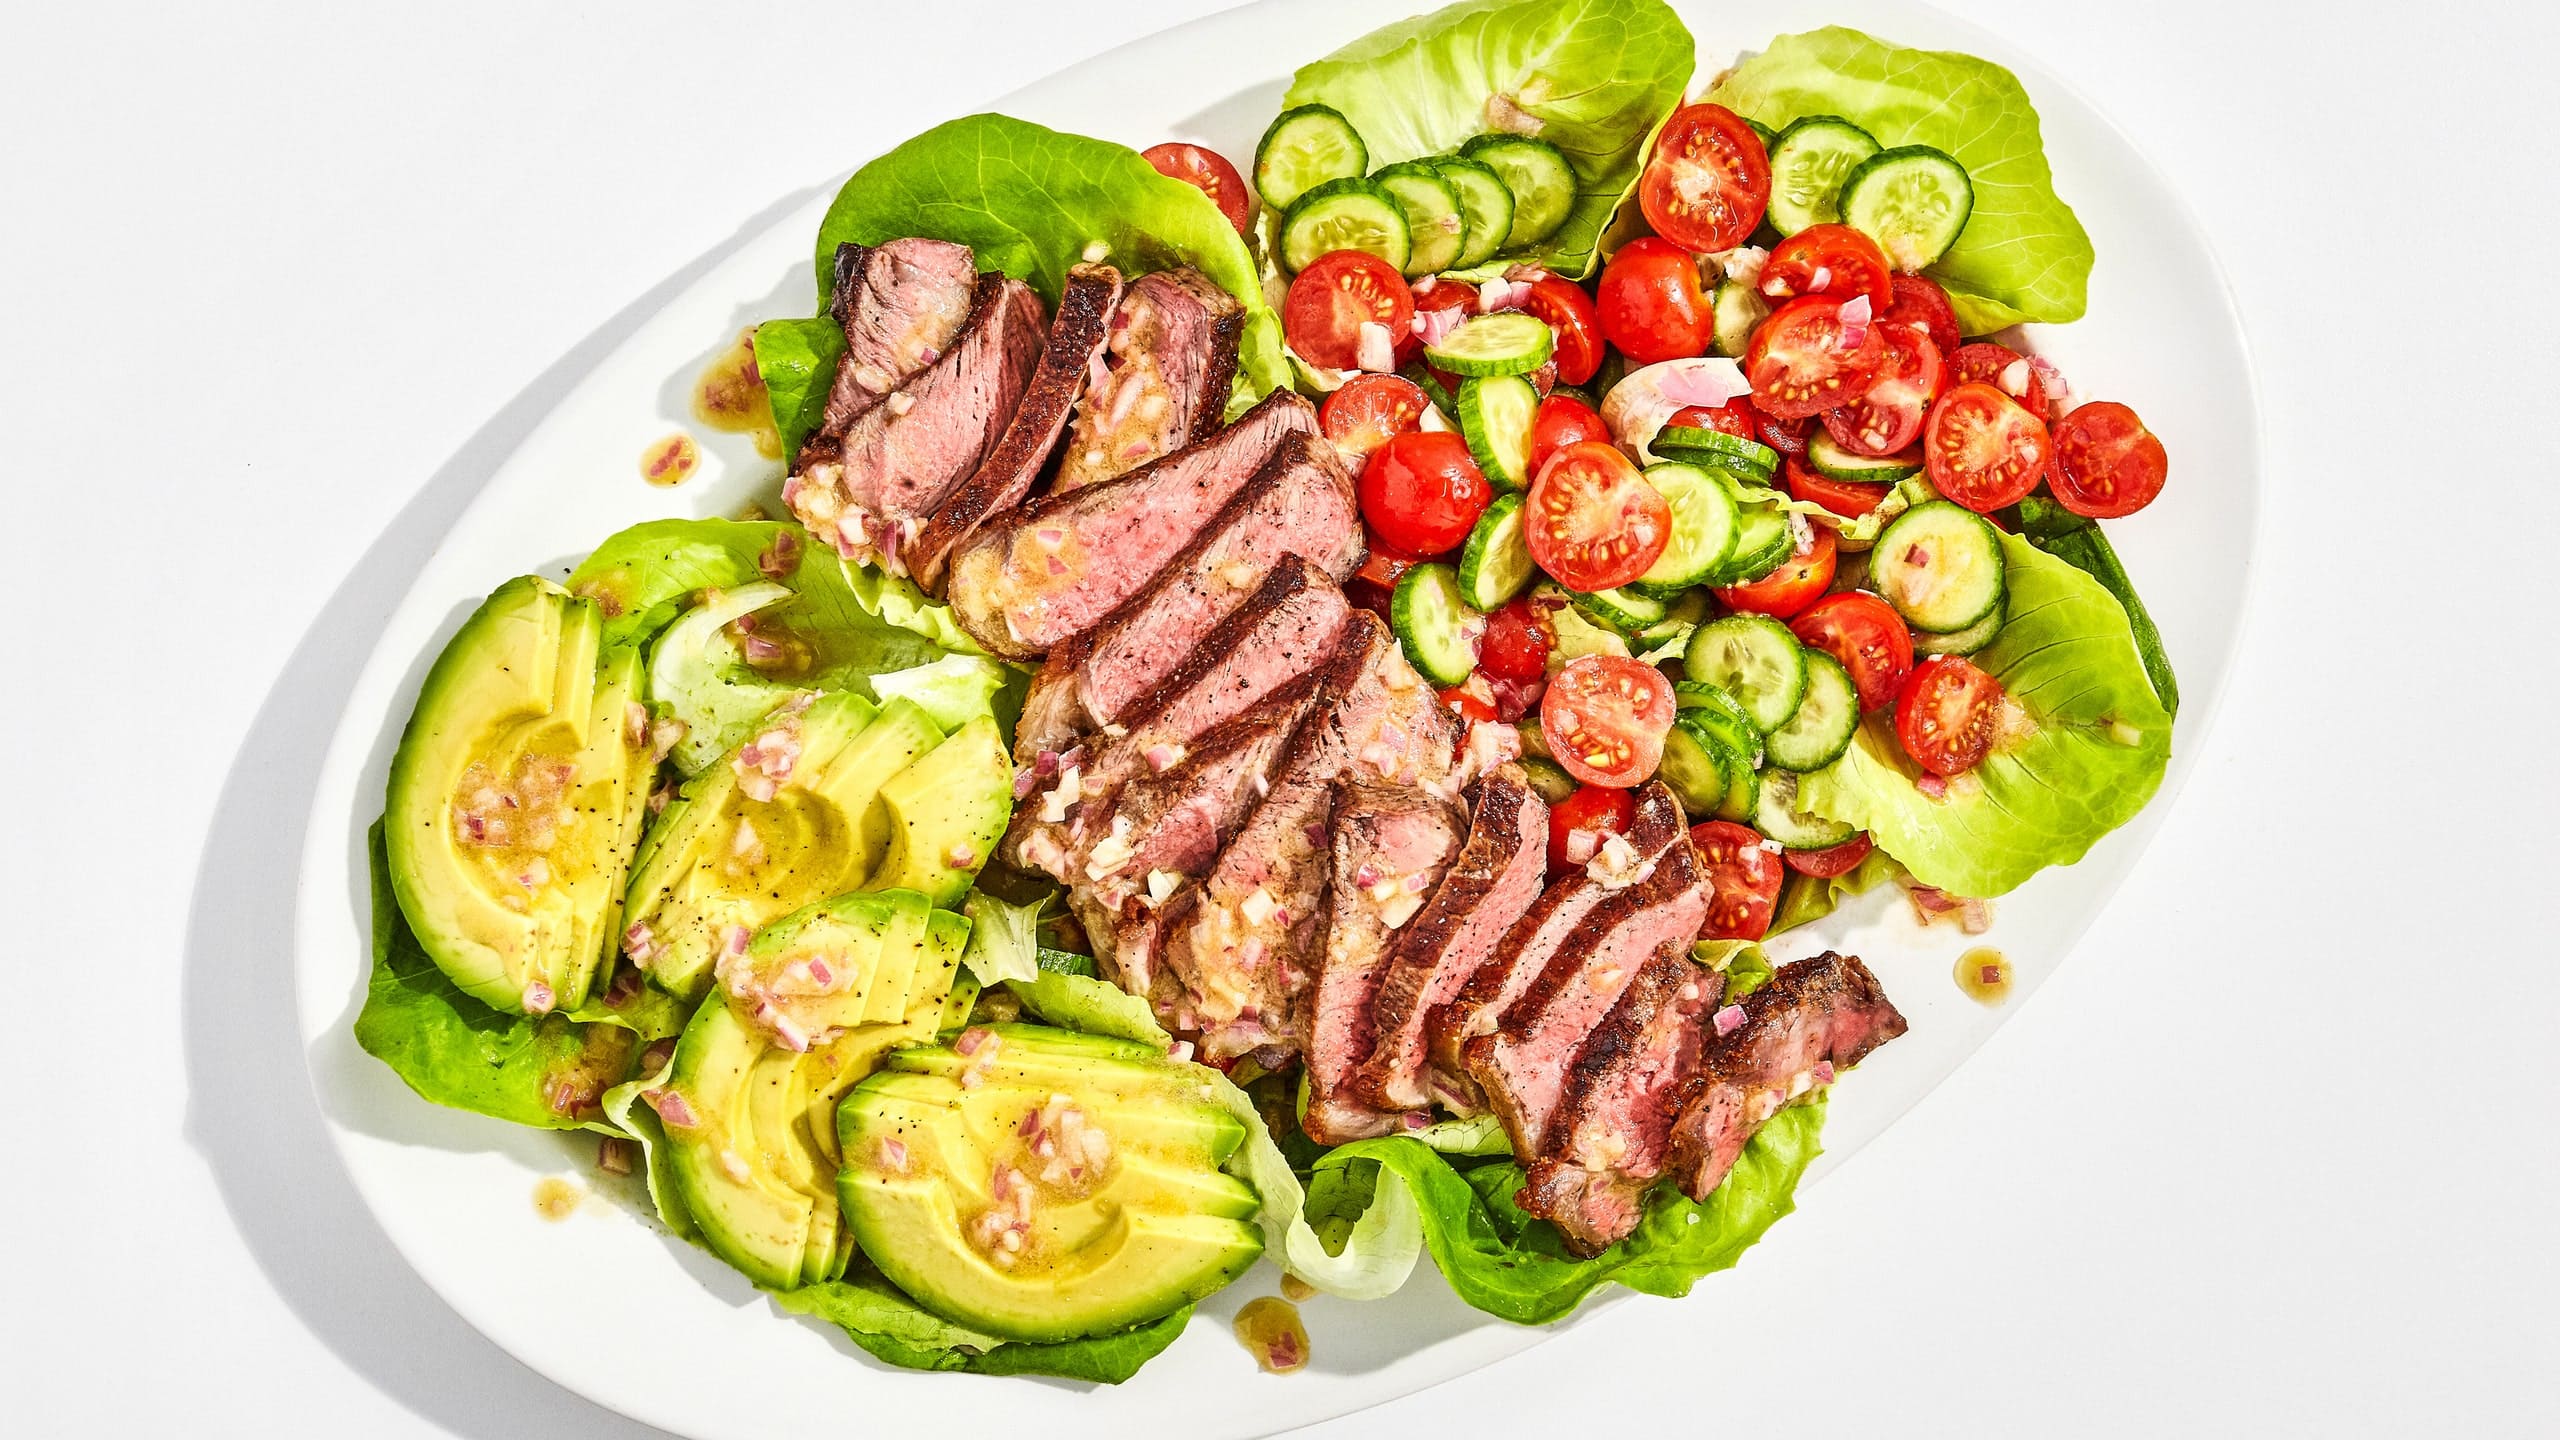 Steak Salad with Shallot Vinaigrette